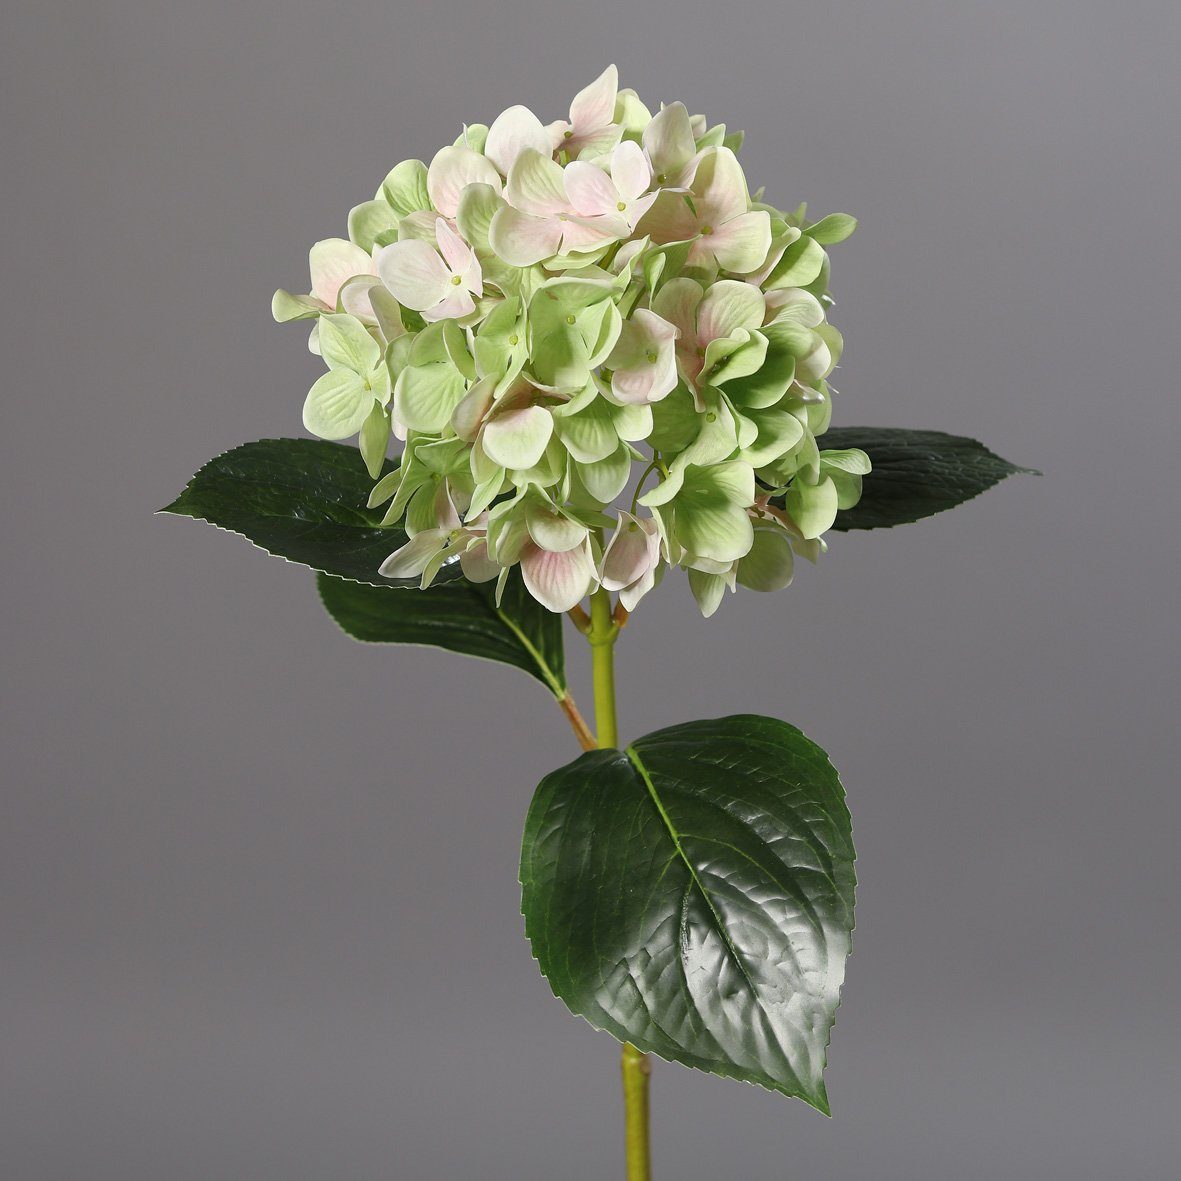 DPI grün-rosé, Wunderschöne Hortensie Kunstblume L67 Kunstblume cm